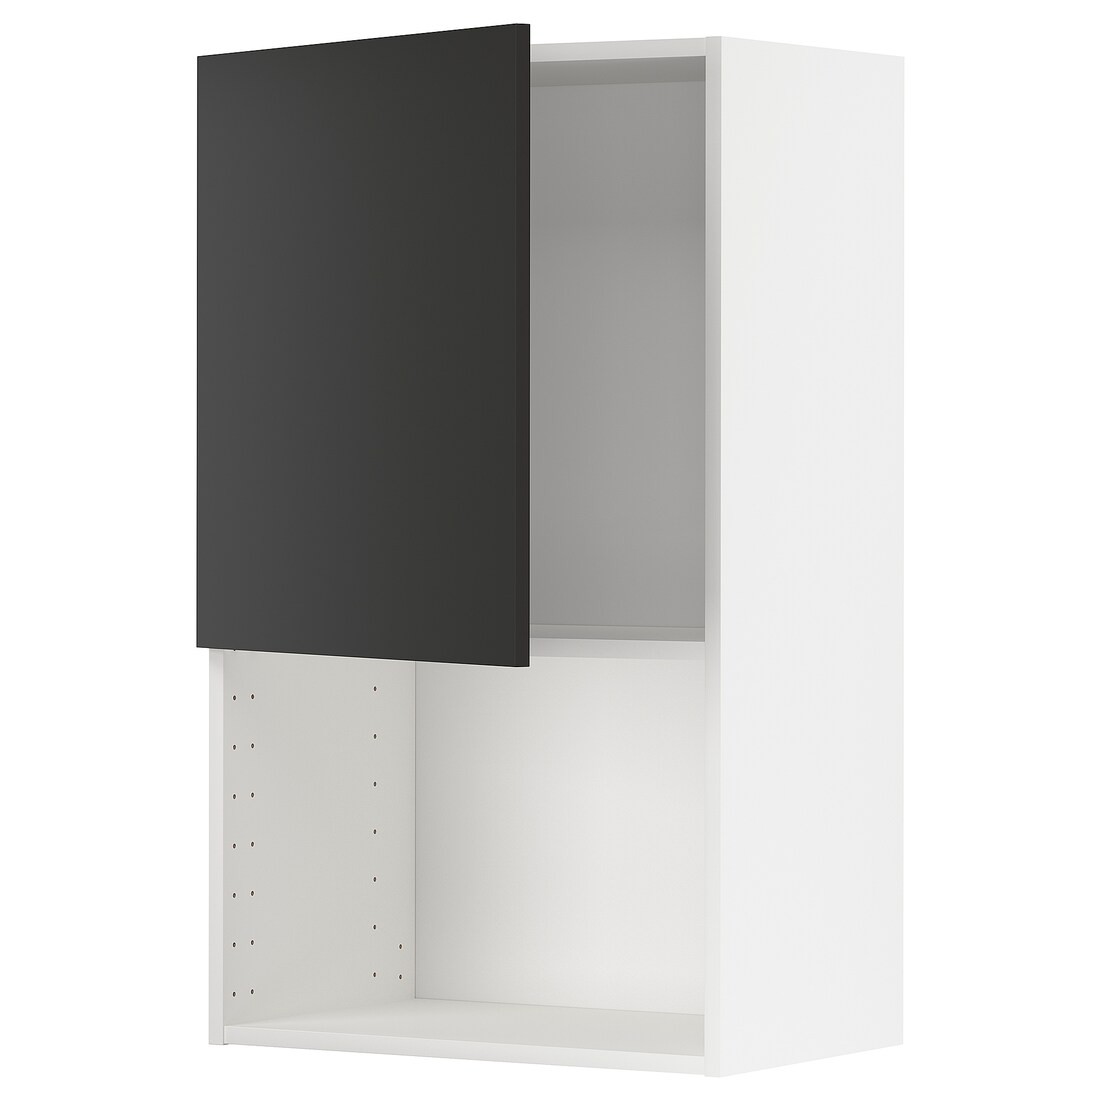 IKEA METOD МЕТОД Навесной шкаф для СВЧ-печи, белый / Nickebo матовый антрацит, 60x100 см 19498735 | 194.987.35